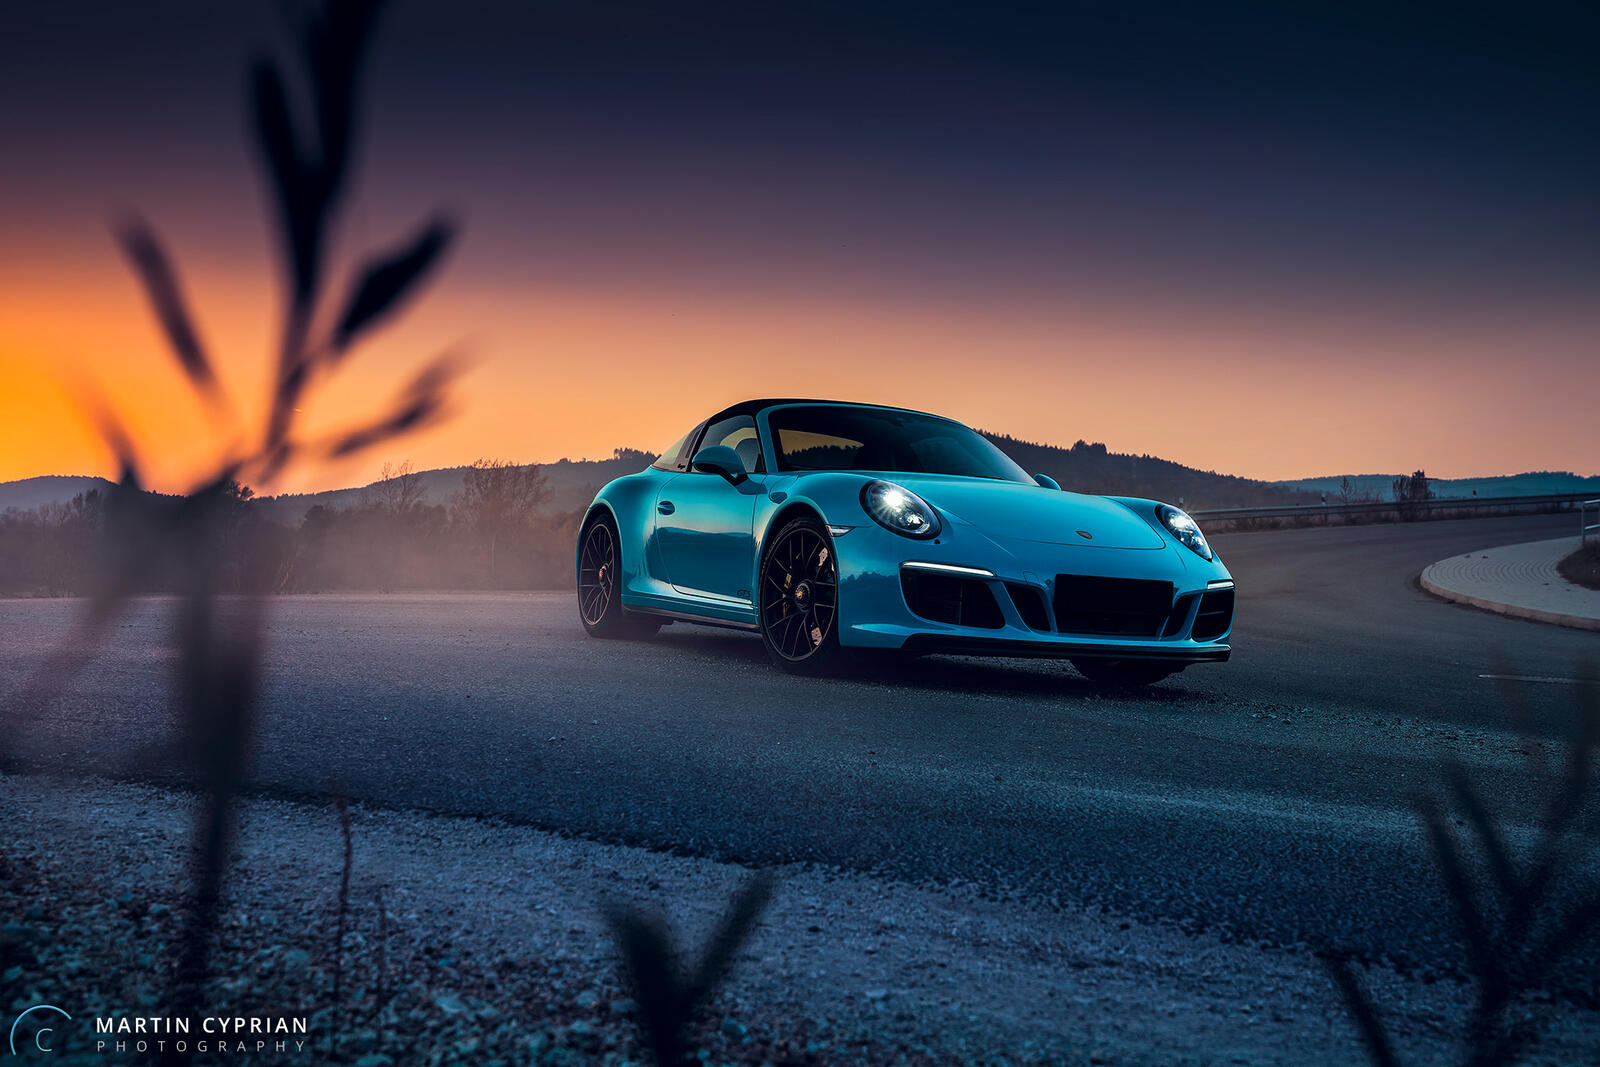 Бесплатное фото Голубой Porsche 911 вечером едет по загородной дороге